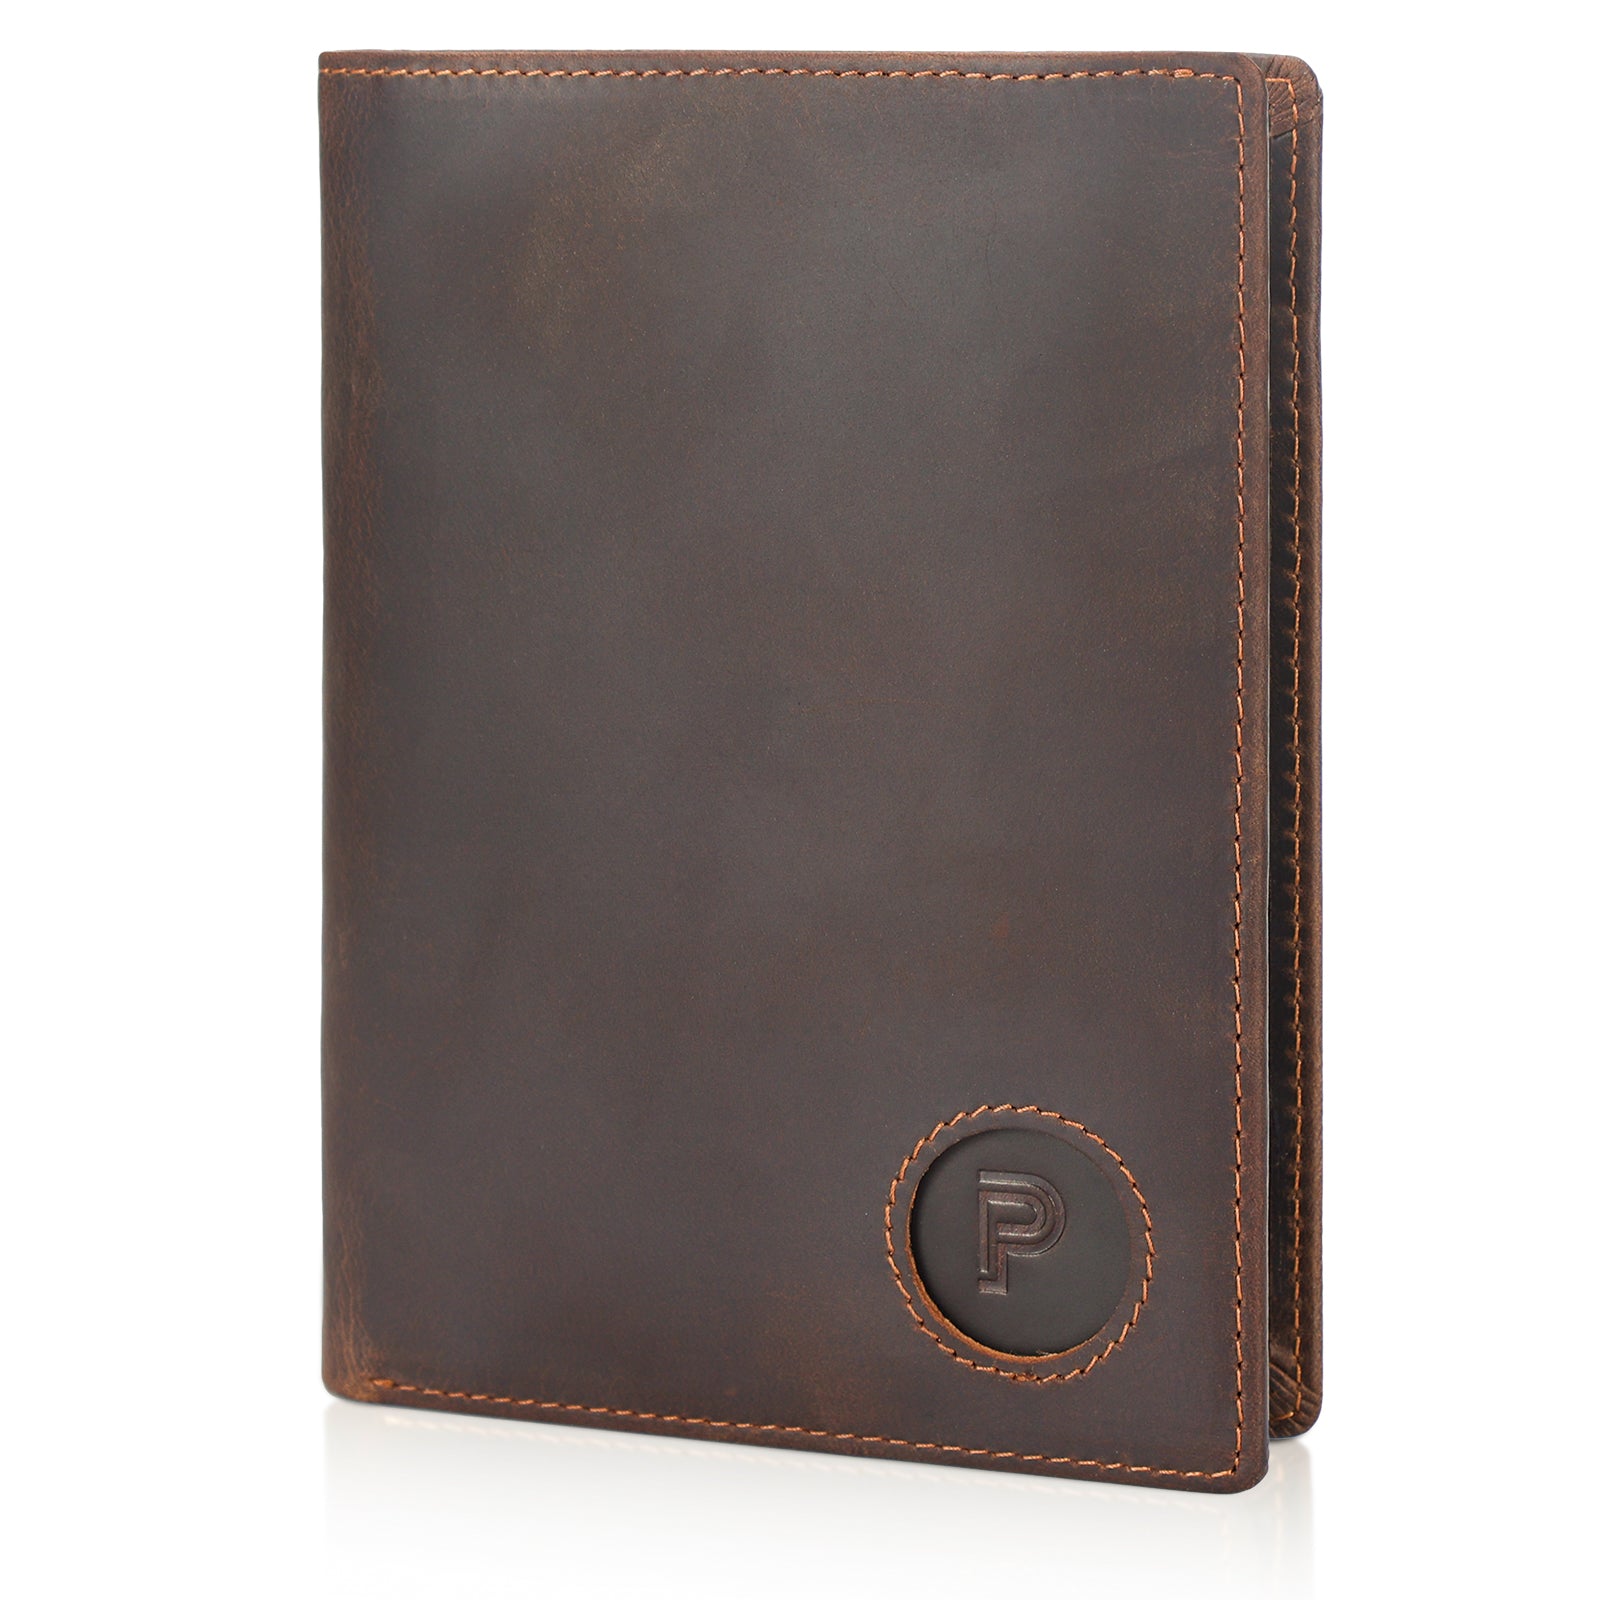 Luxury RFID Blocking Leather Passport Holder Travel Wallet with AirTag Slot (Dark Brown)